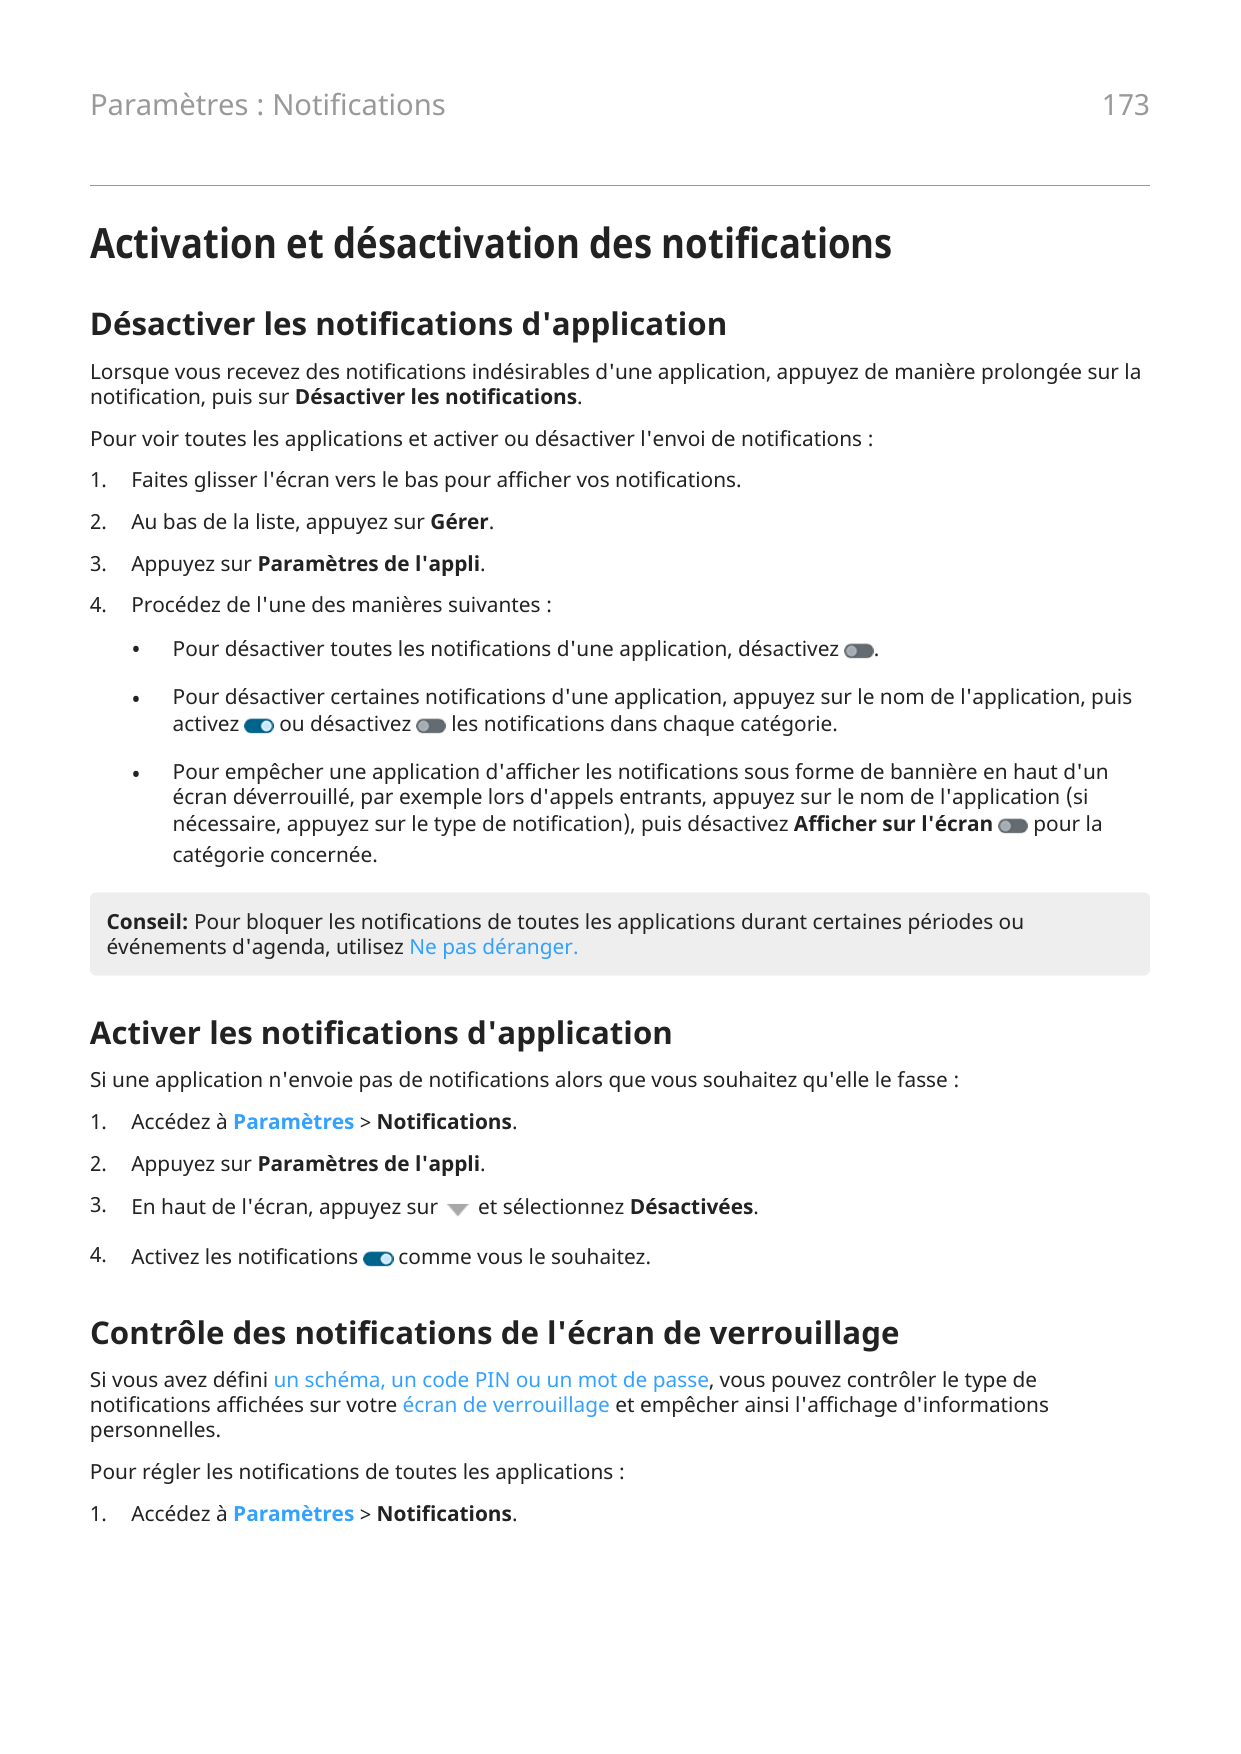 173Paramètres : NotificationsActivation et désactivation des notificationsDésactiver les notifications d'applicationLorsque vous